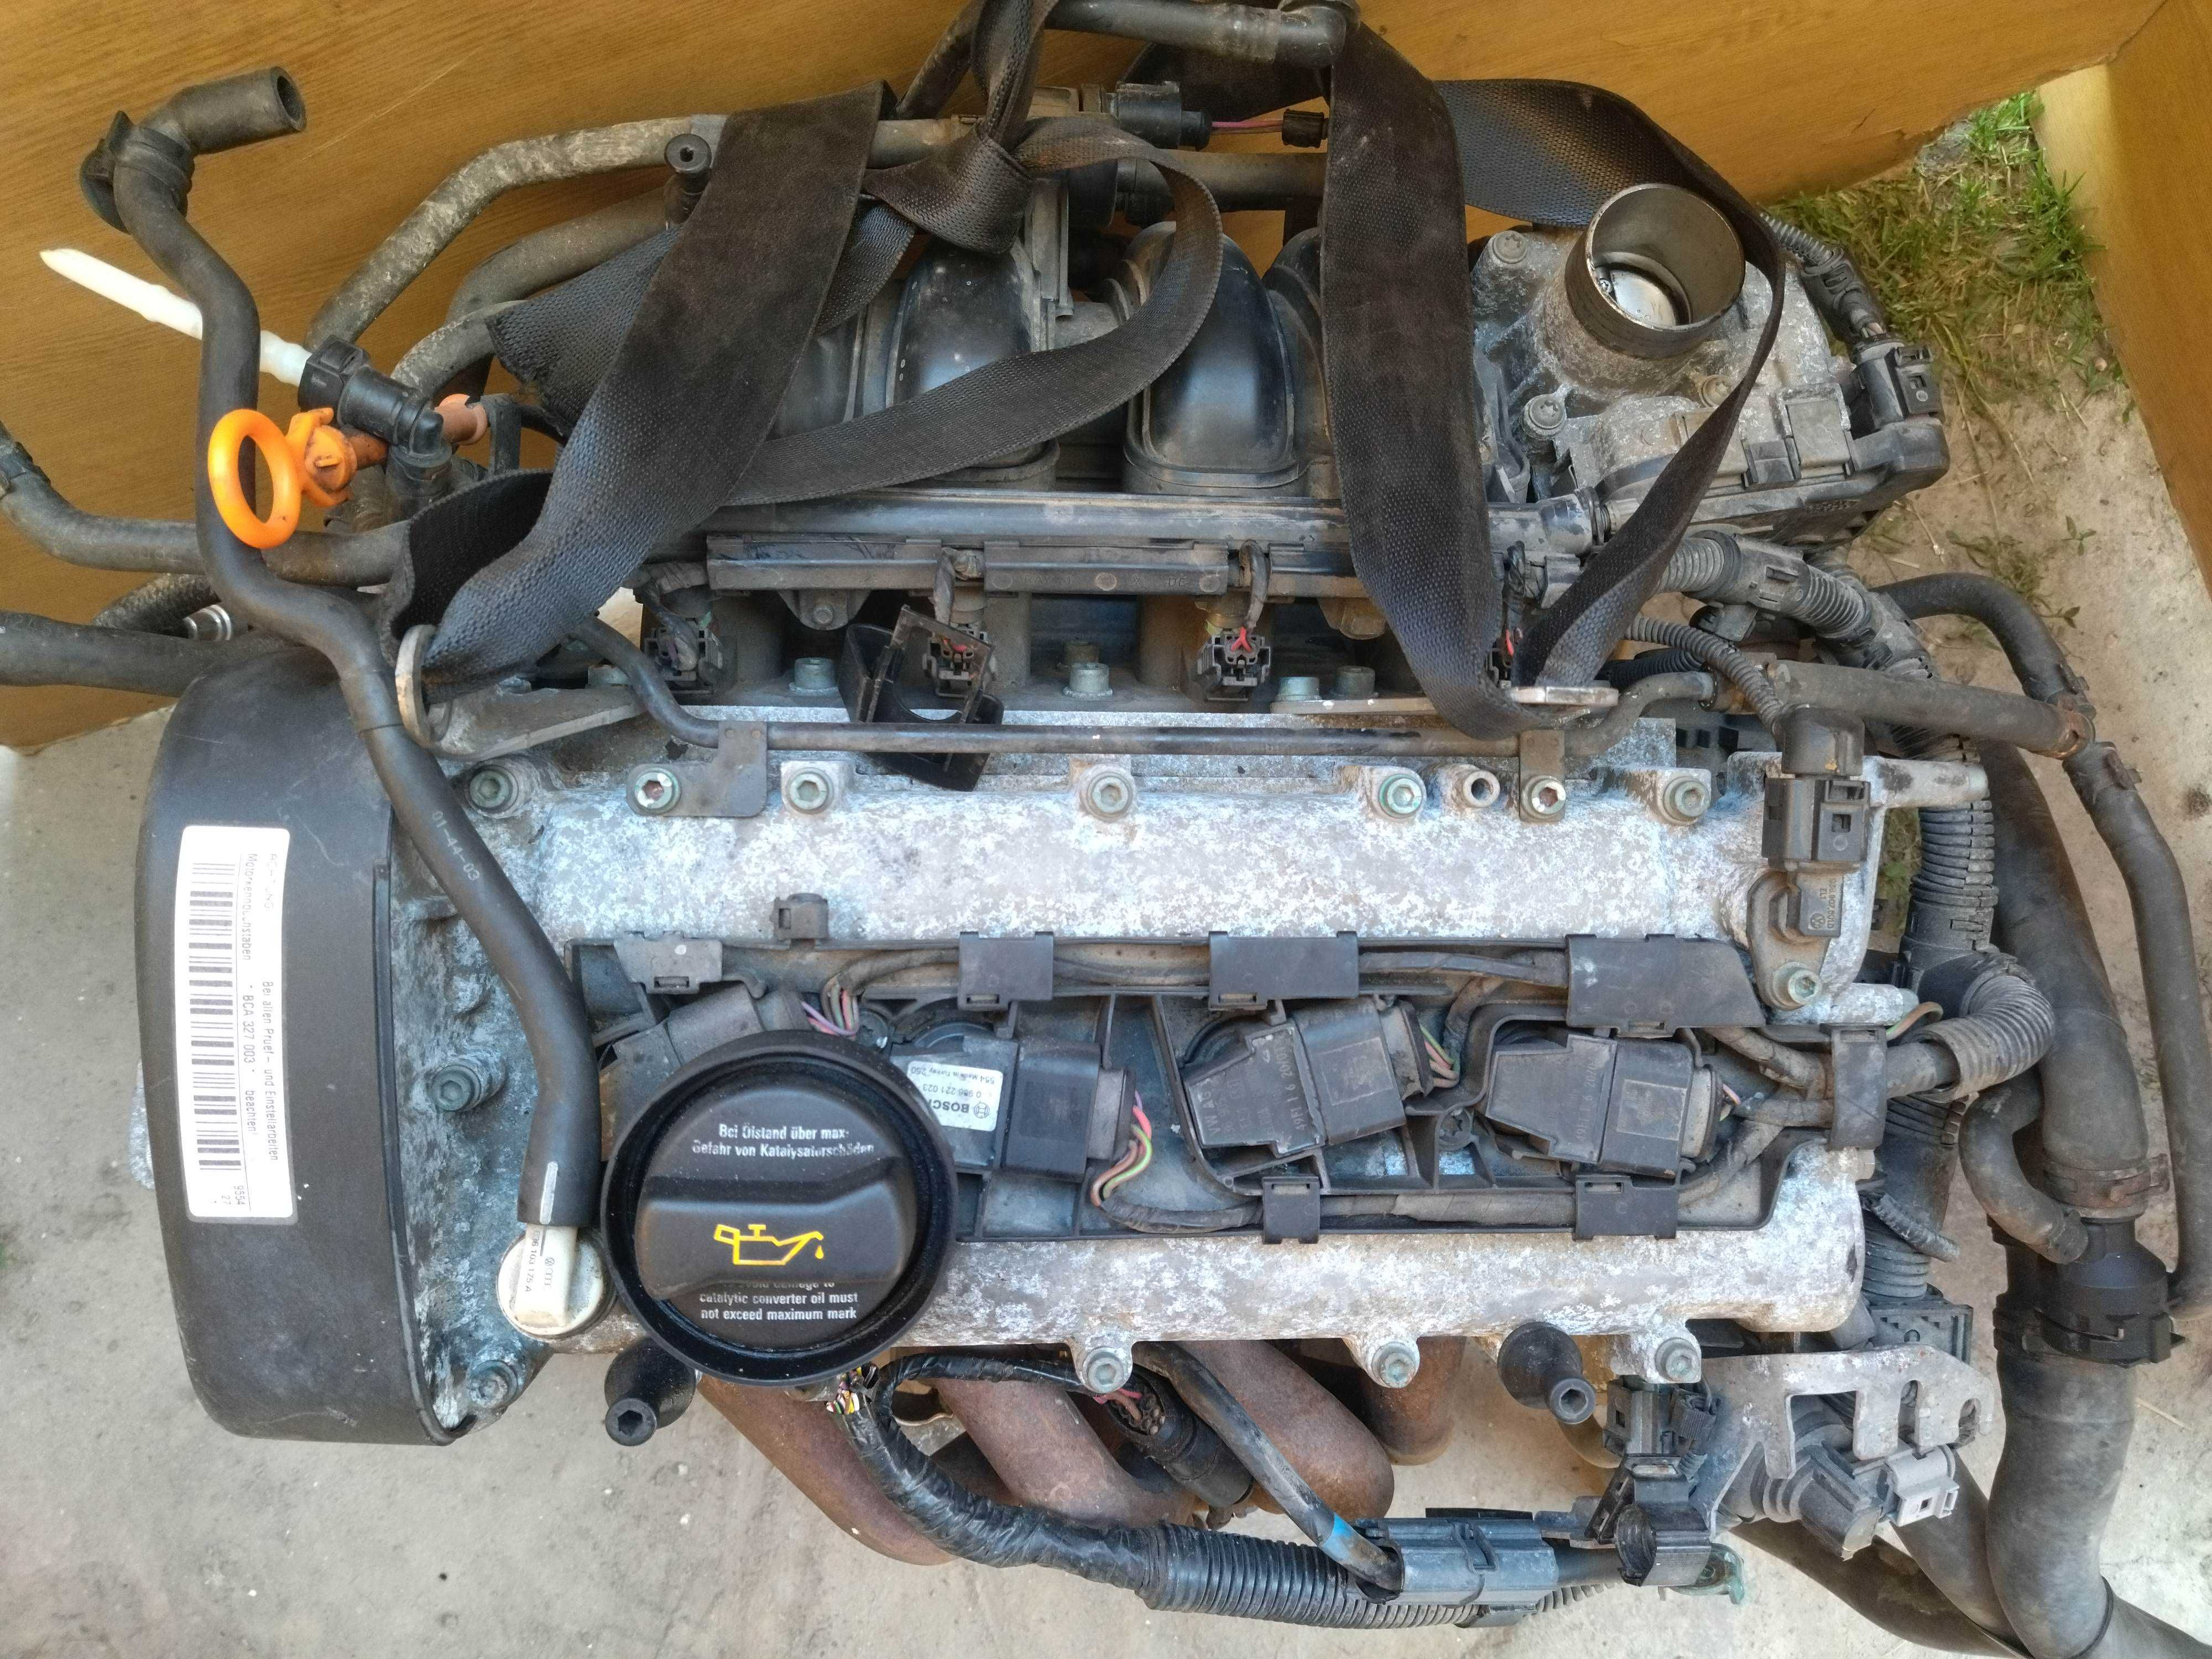 Двигатель двигун мотор bca 1,4 55Кв Volkswagen Caddy Кадди